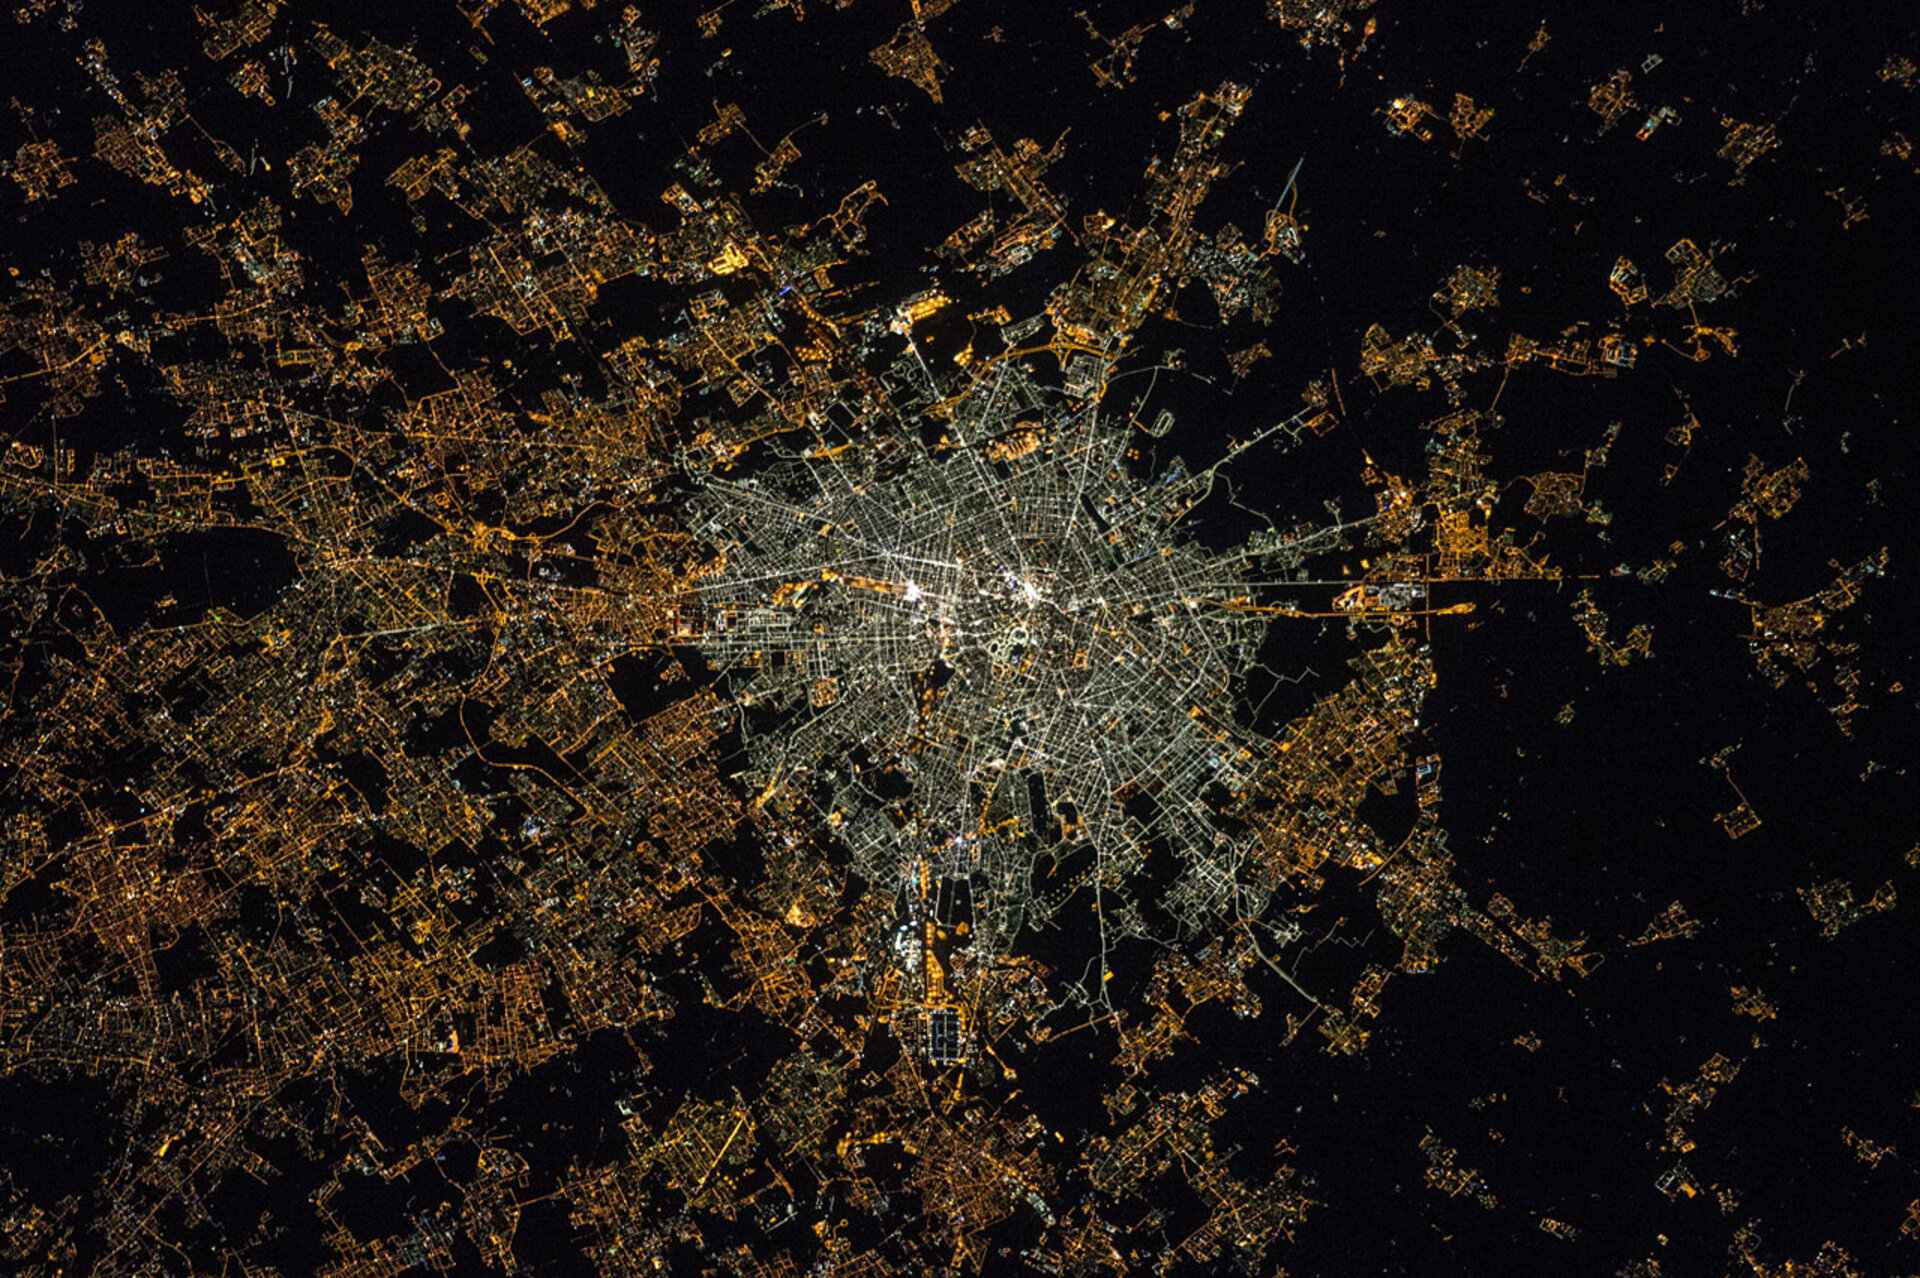 Milan at night in 2015